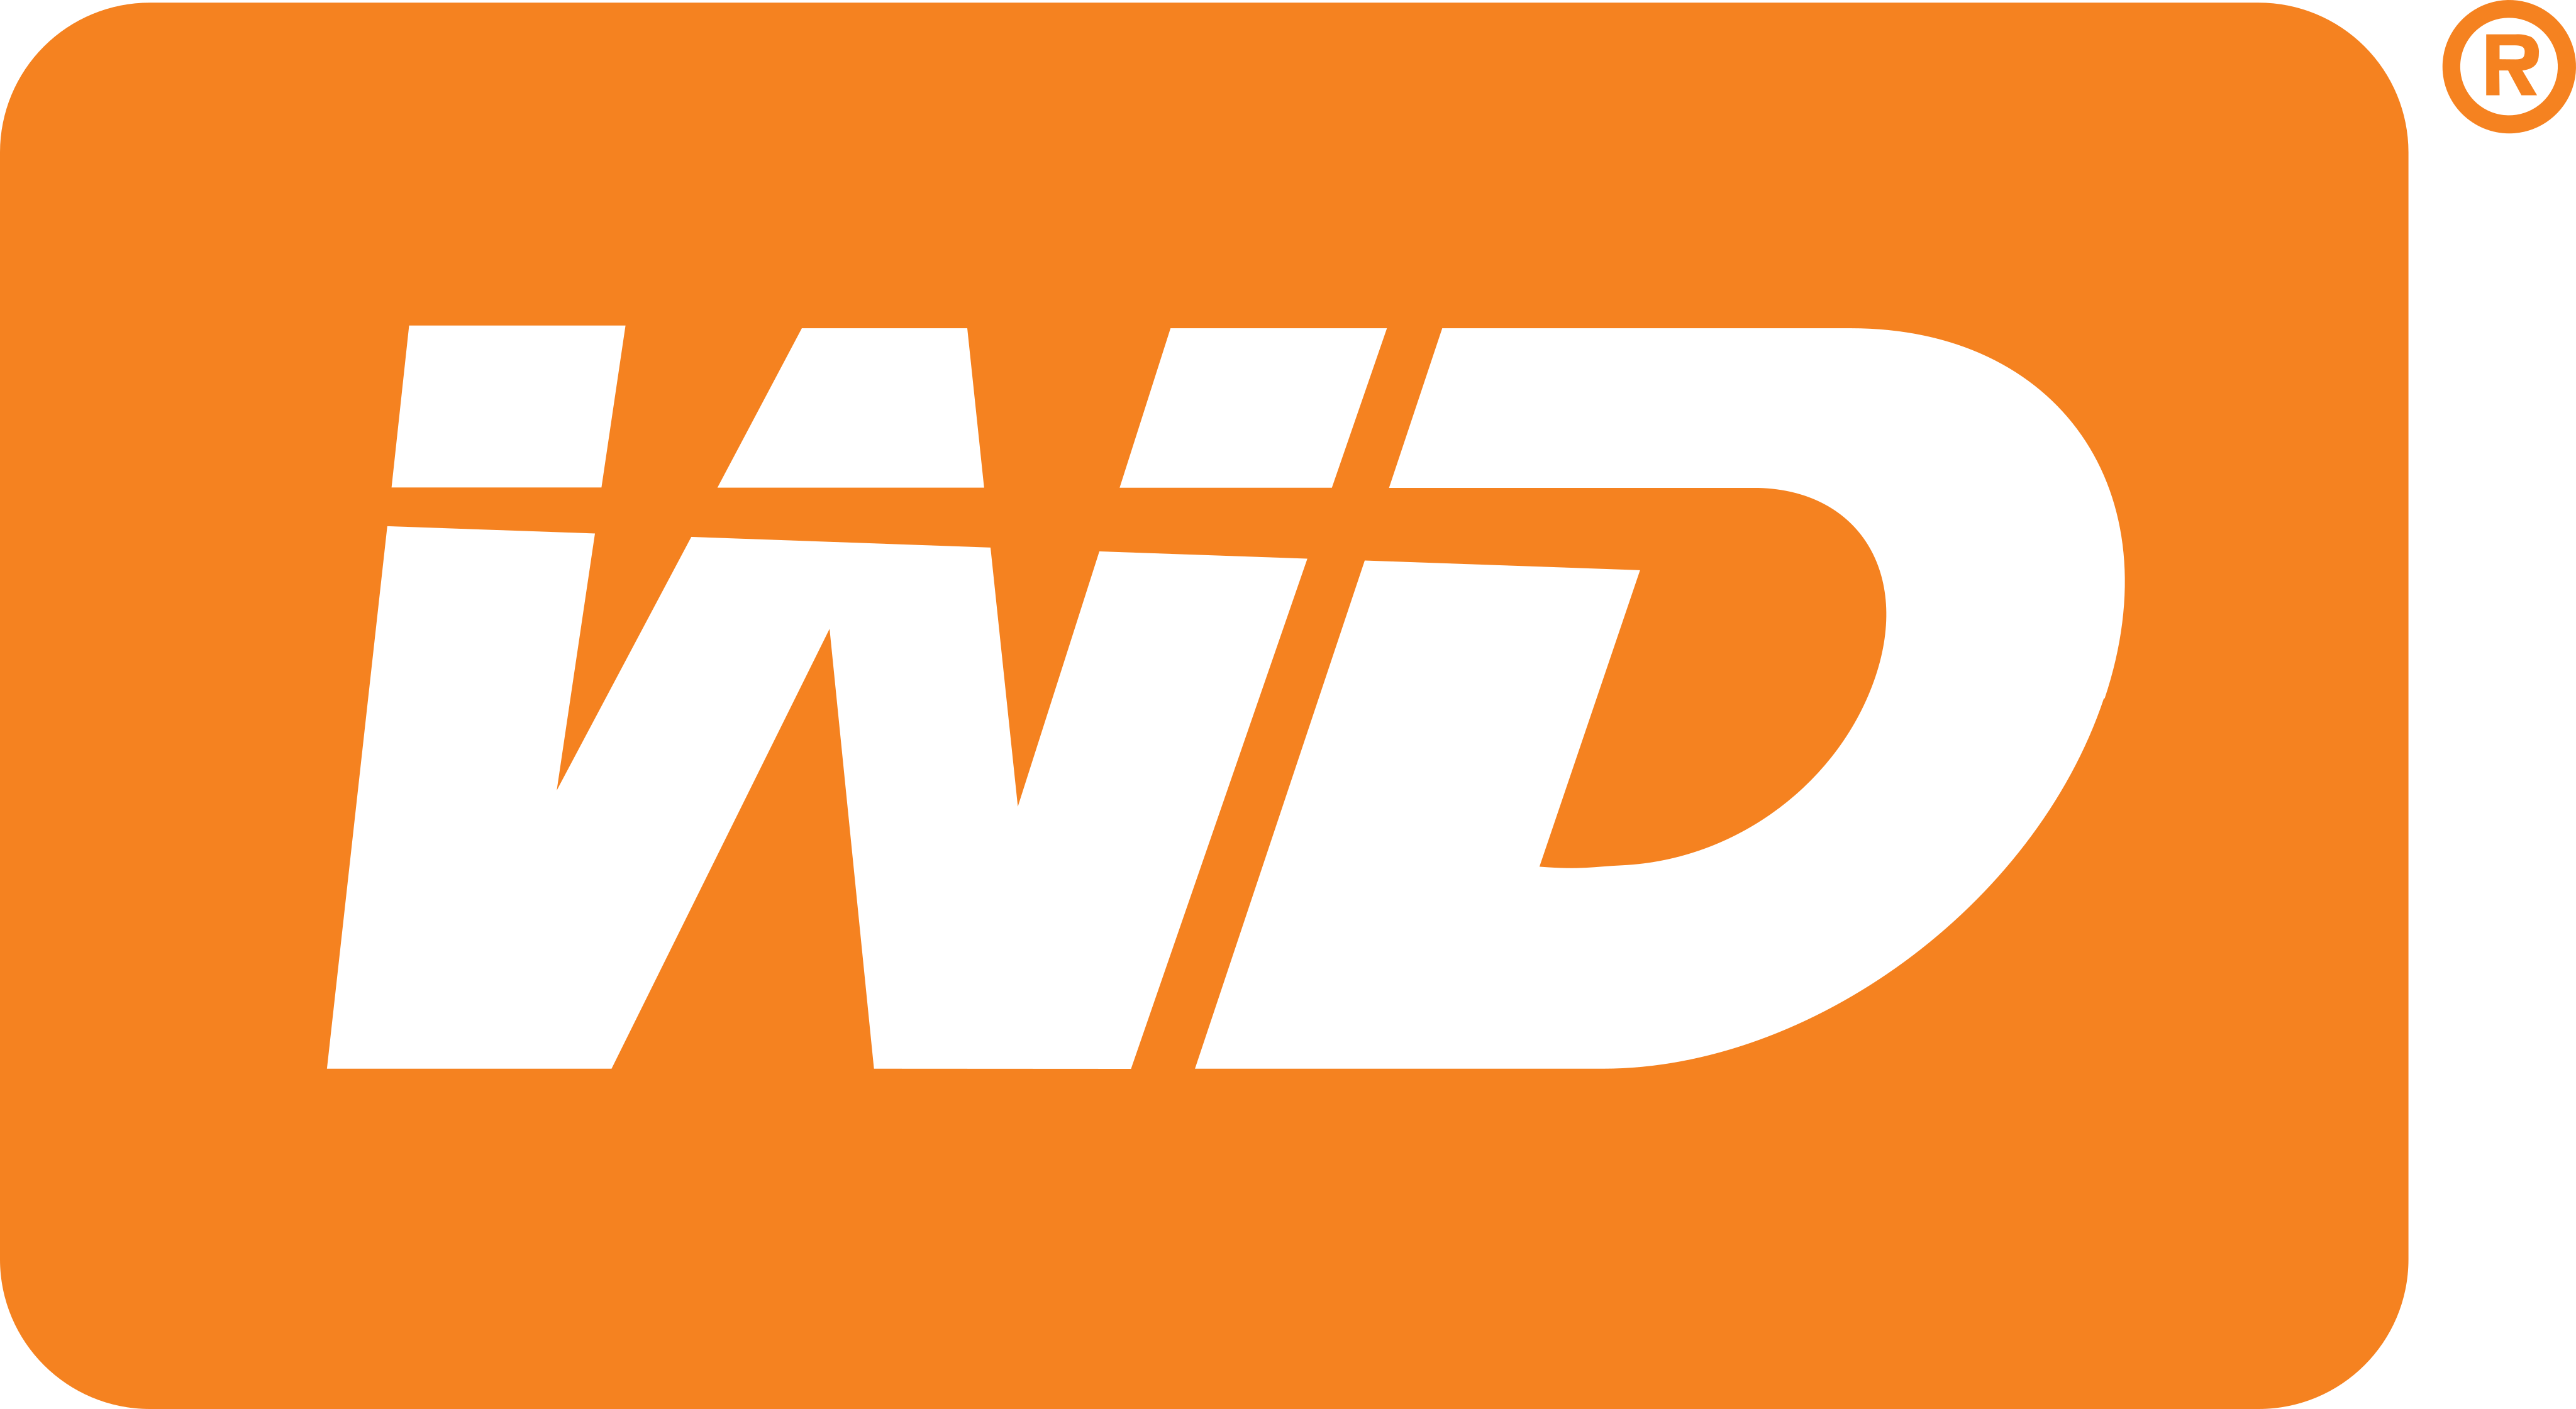 western digital logo 1 1 - Western Digital Logo